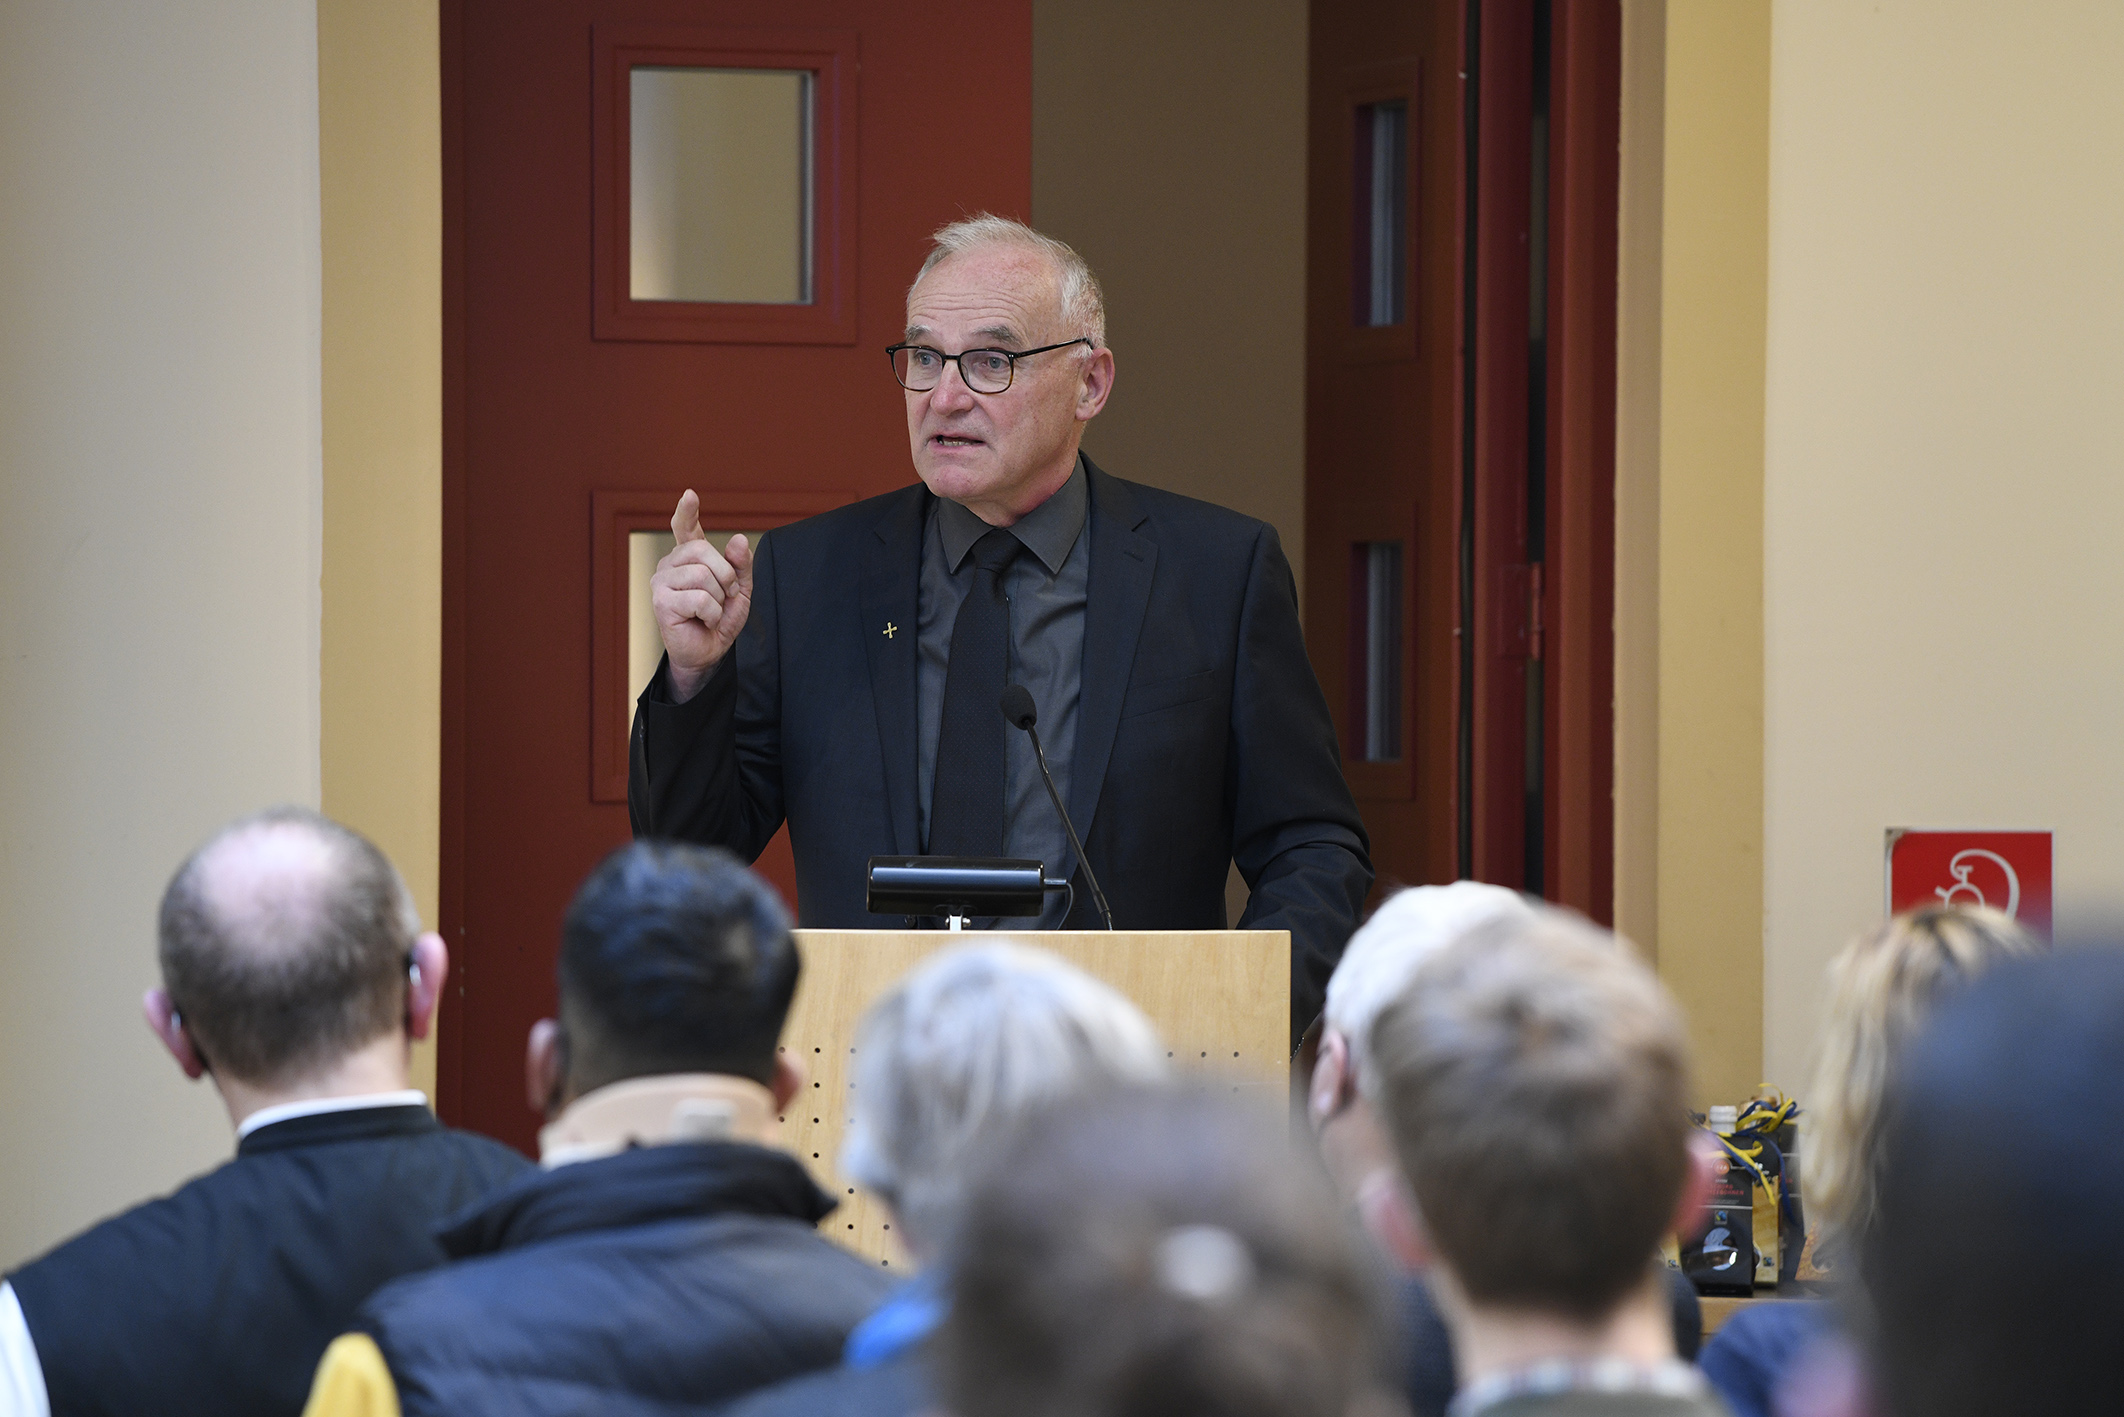 Festrede Dechant Alois Dürlinger, Sprecher in Asyl- und Flüchtlingsangelegenheiten der Erzdiözese Salzburg